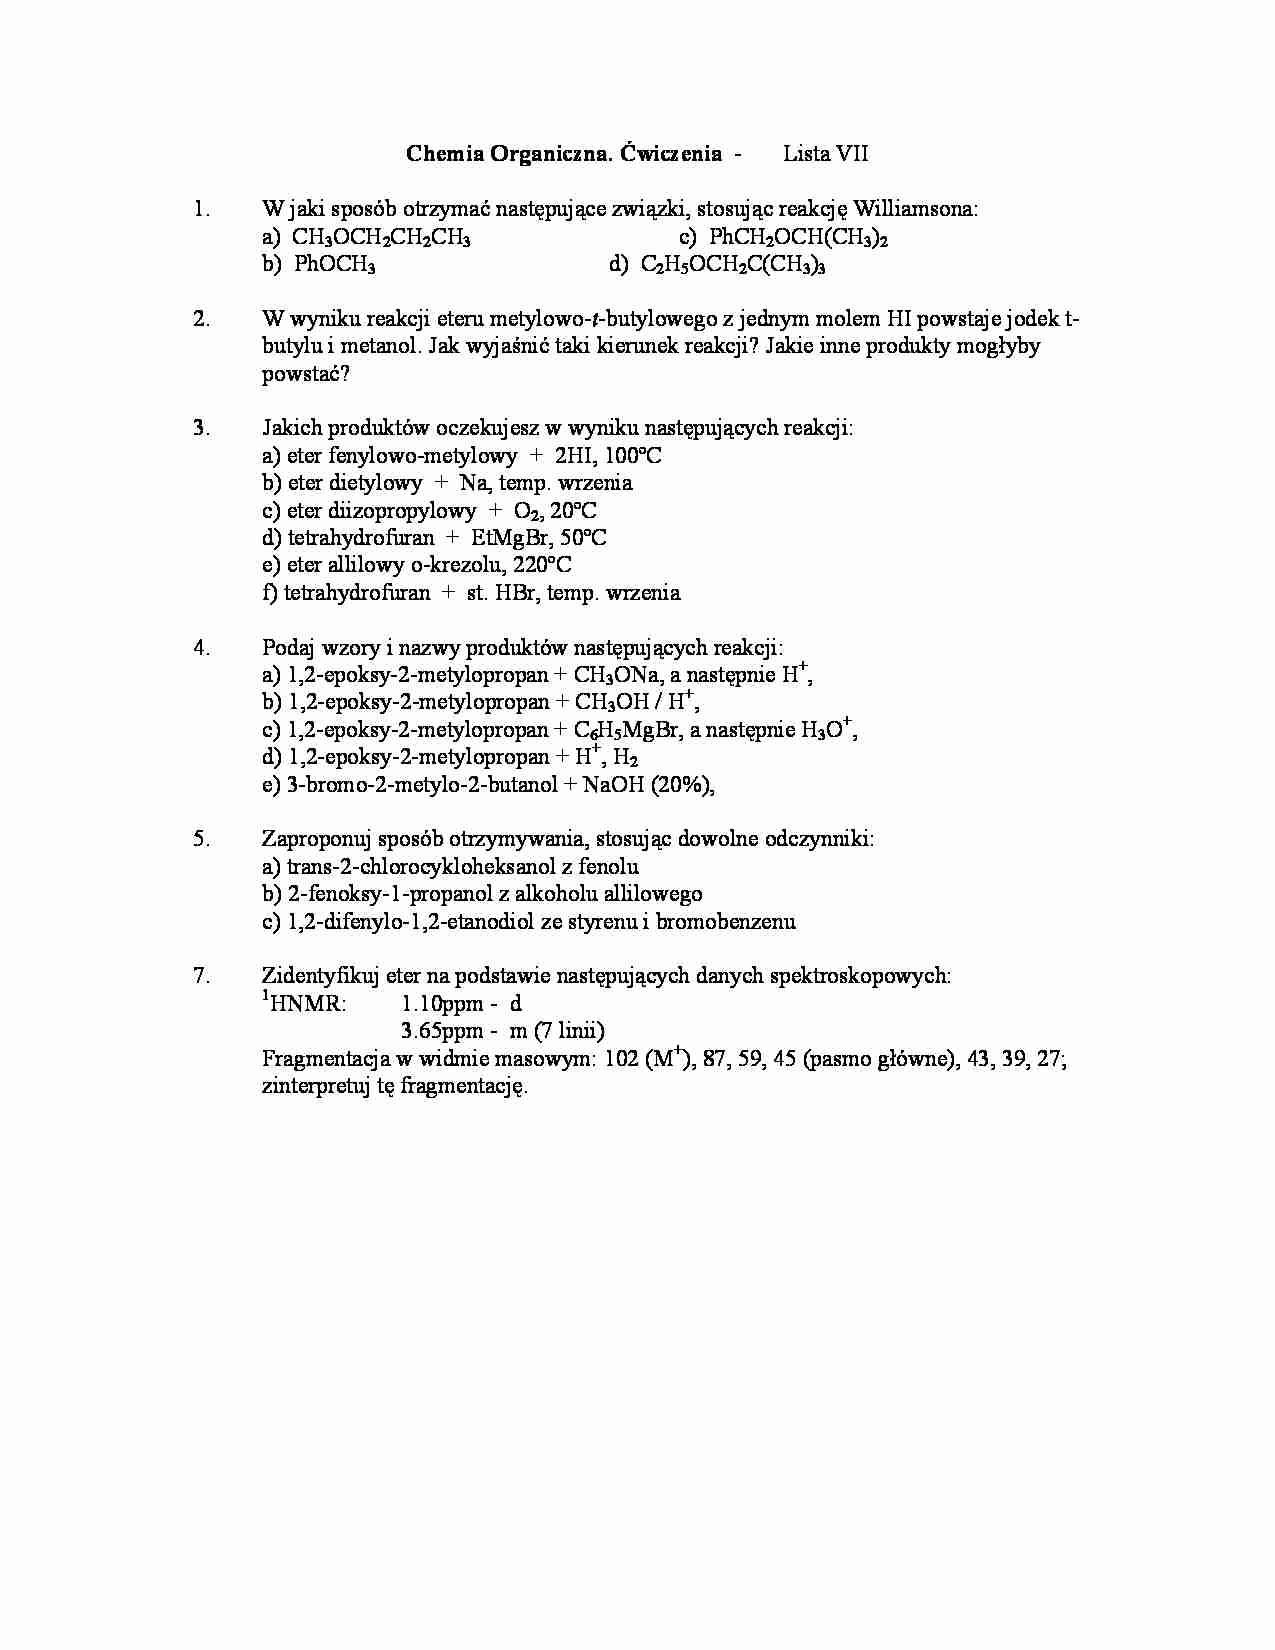 Chemia organiczna - ćwiczenia, lista VI - Eter dietylowy - strona 1